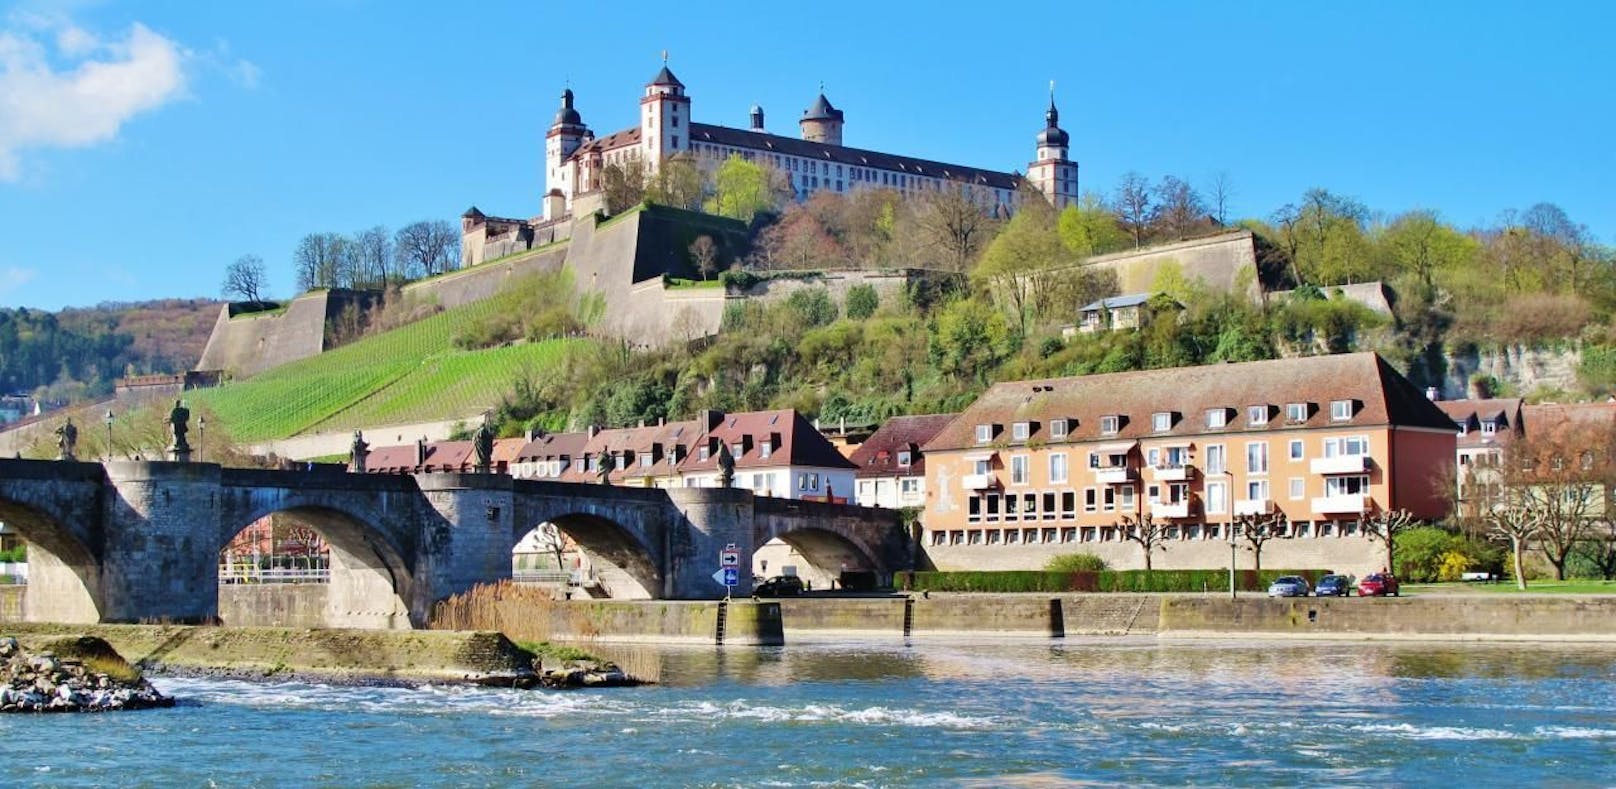 Diözese Würzburg in Deutschland zeigte den Priester im Ruhestand an